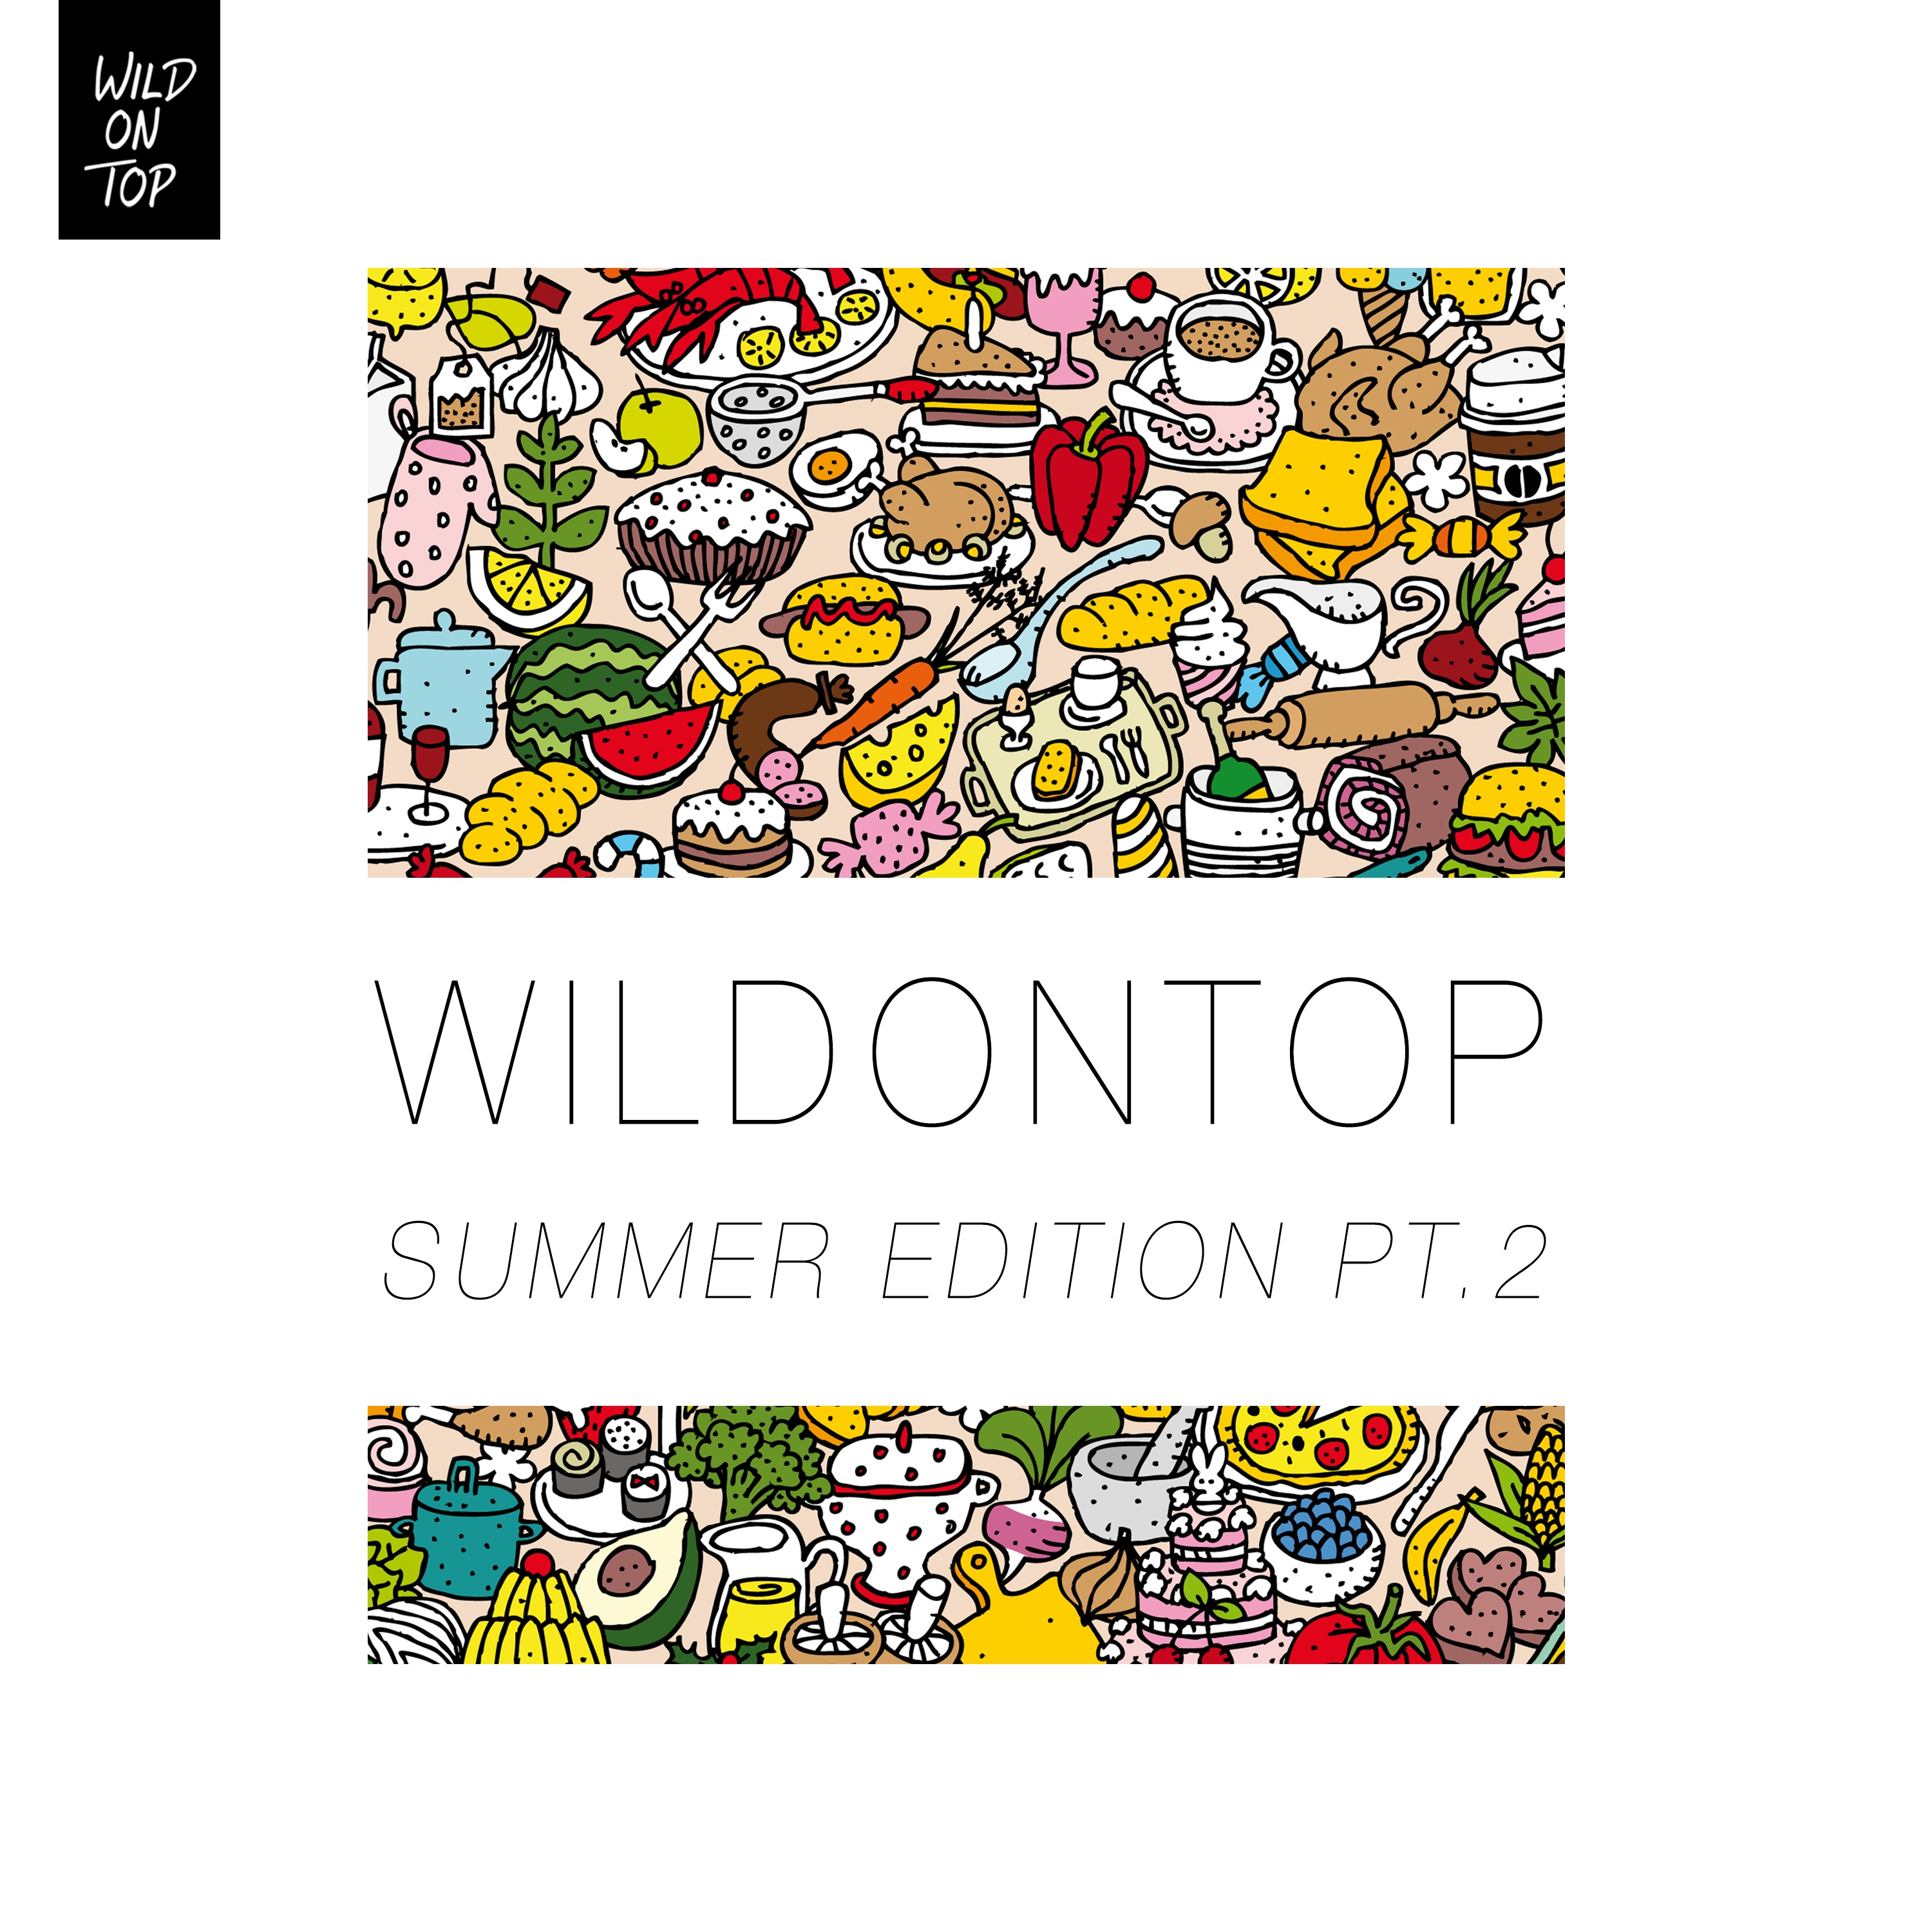 WildOnTop Summer Edition, Pt. 2